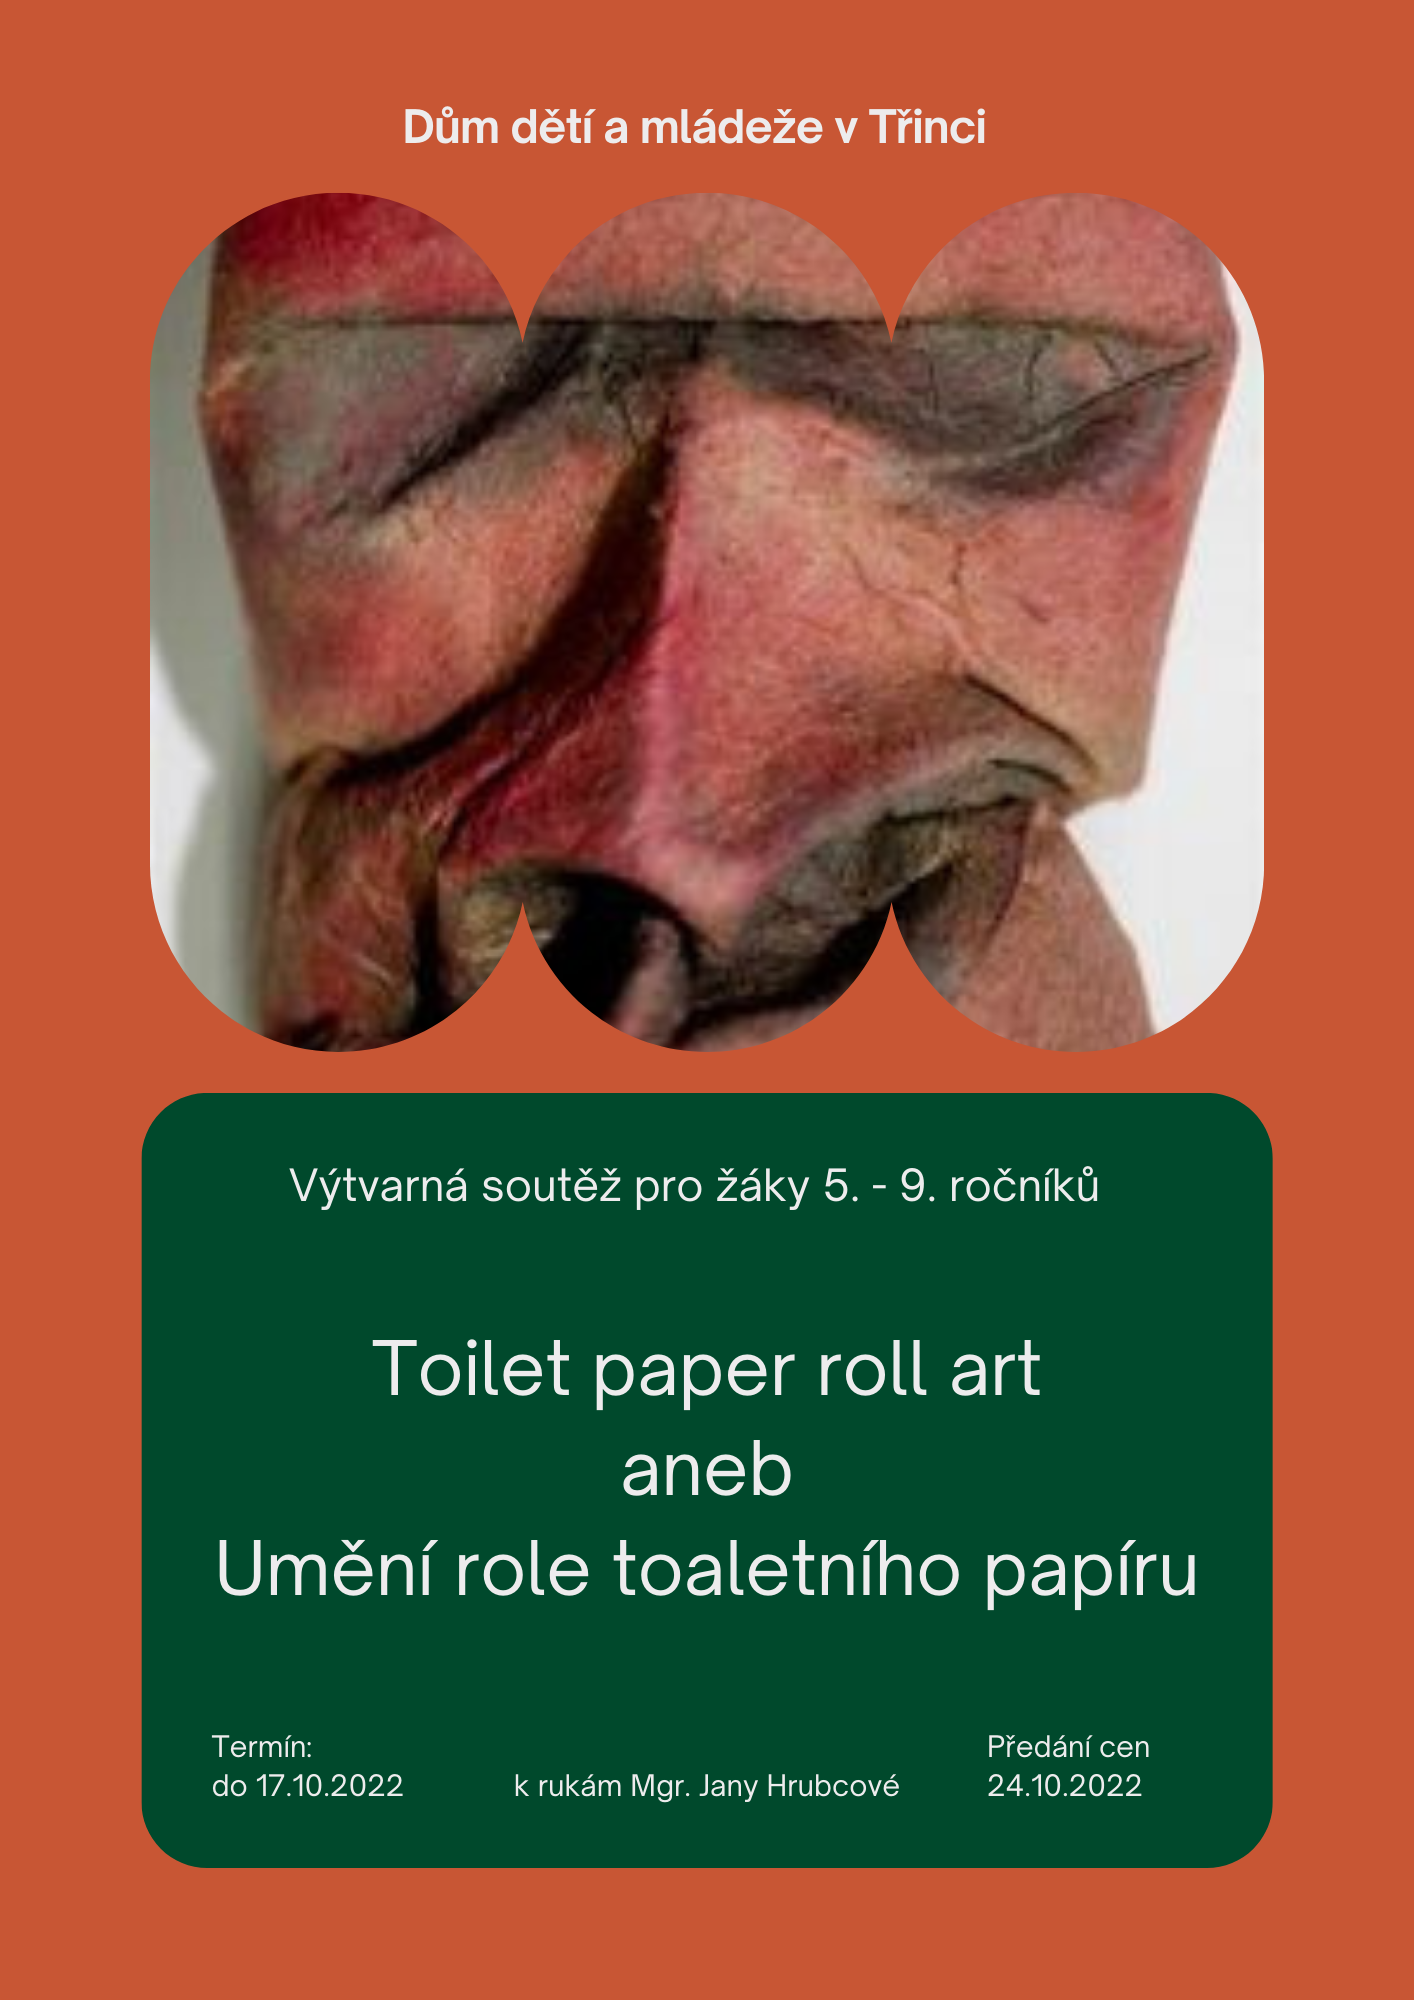 VÝTVARNÁ SOUTĚŽ – umění role toaletního papíru